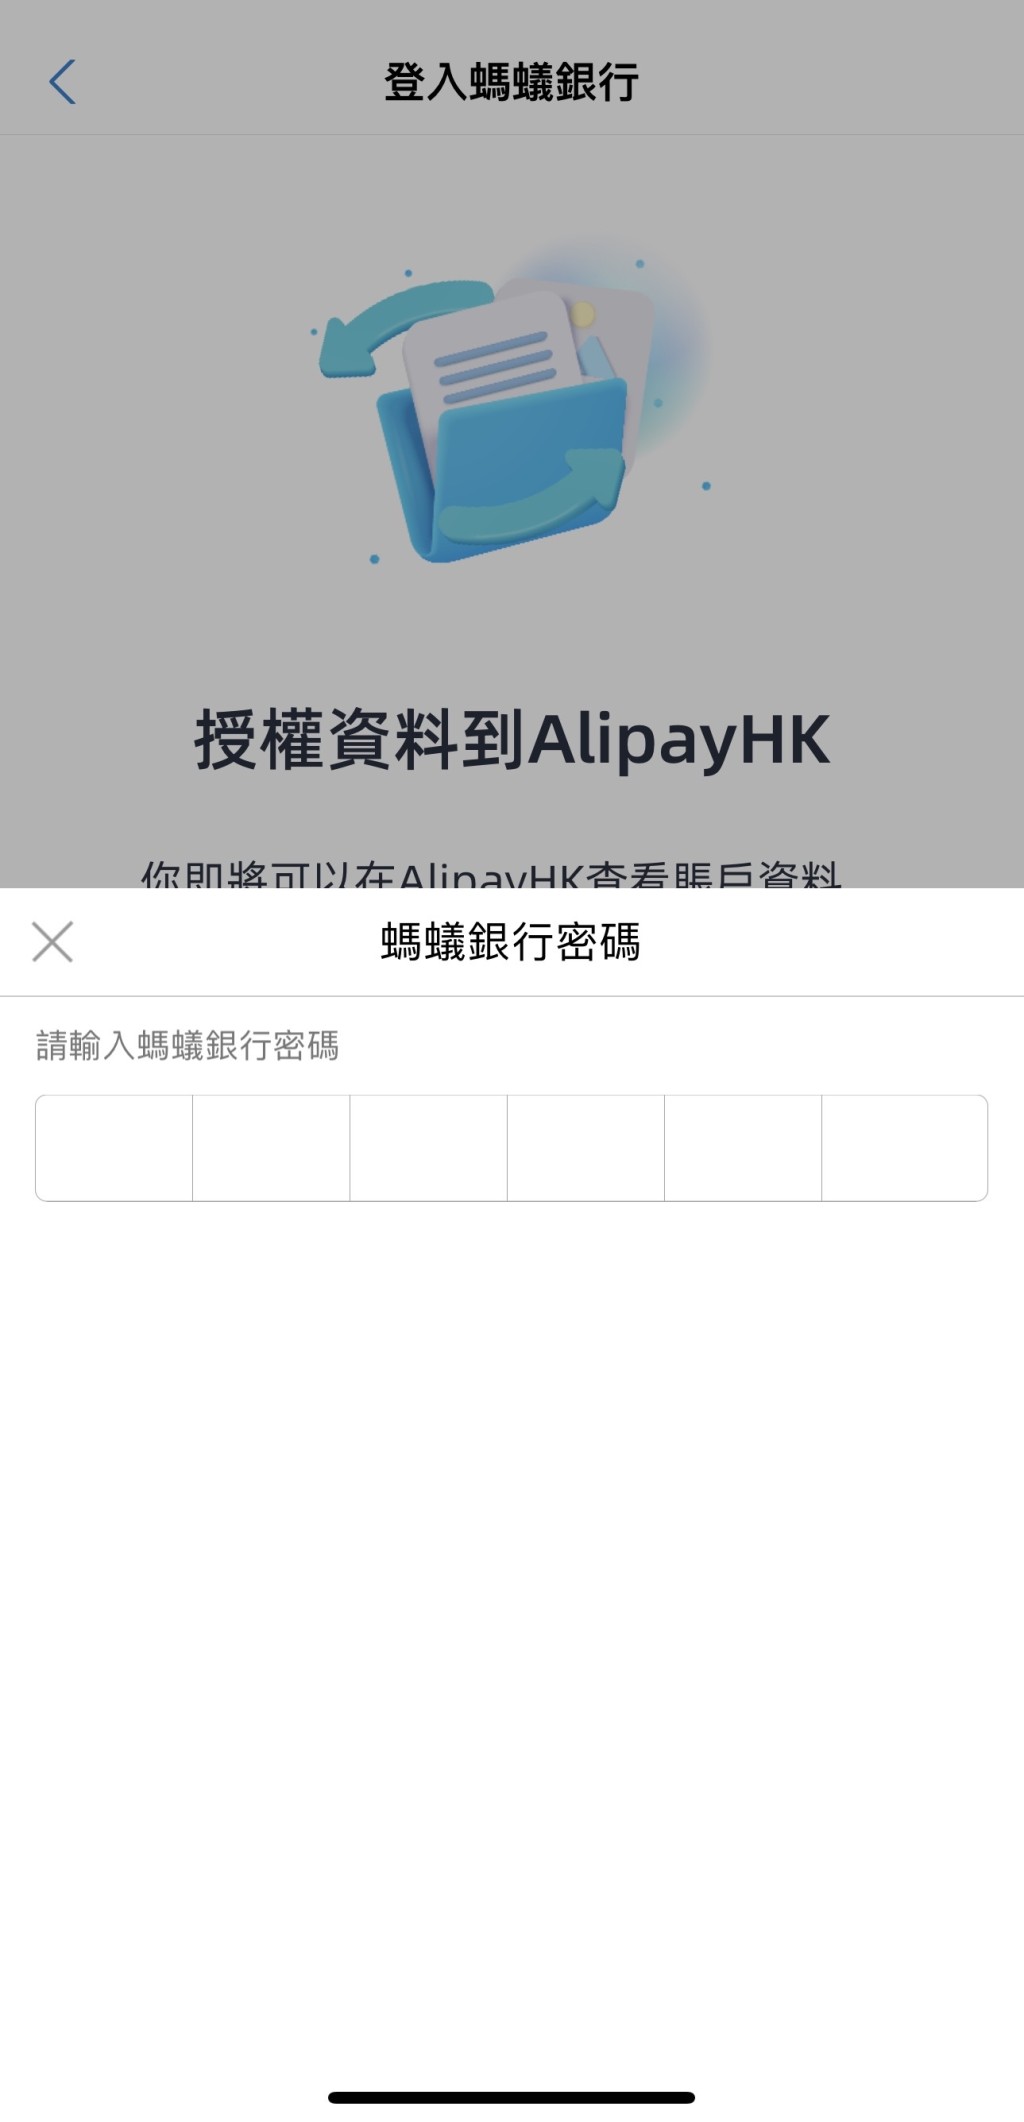 5. 输入蚂蚁银行密码登入银行，并允许授权资料到AlipayHK。